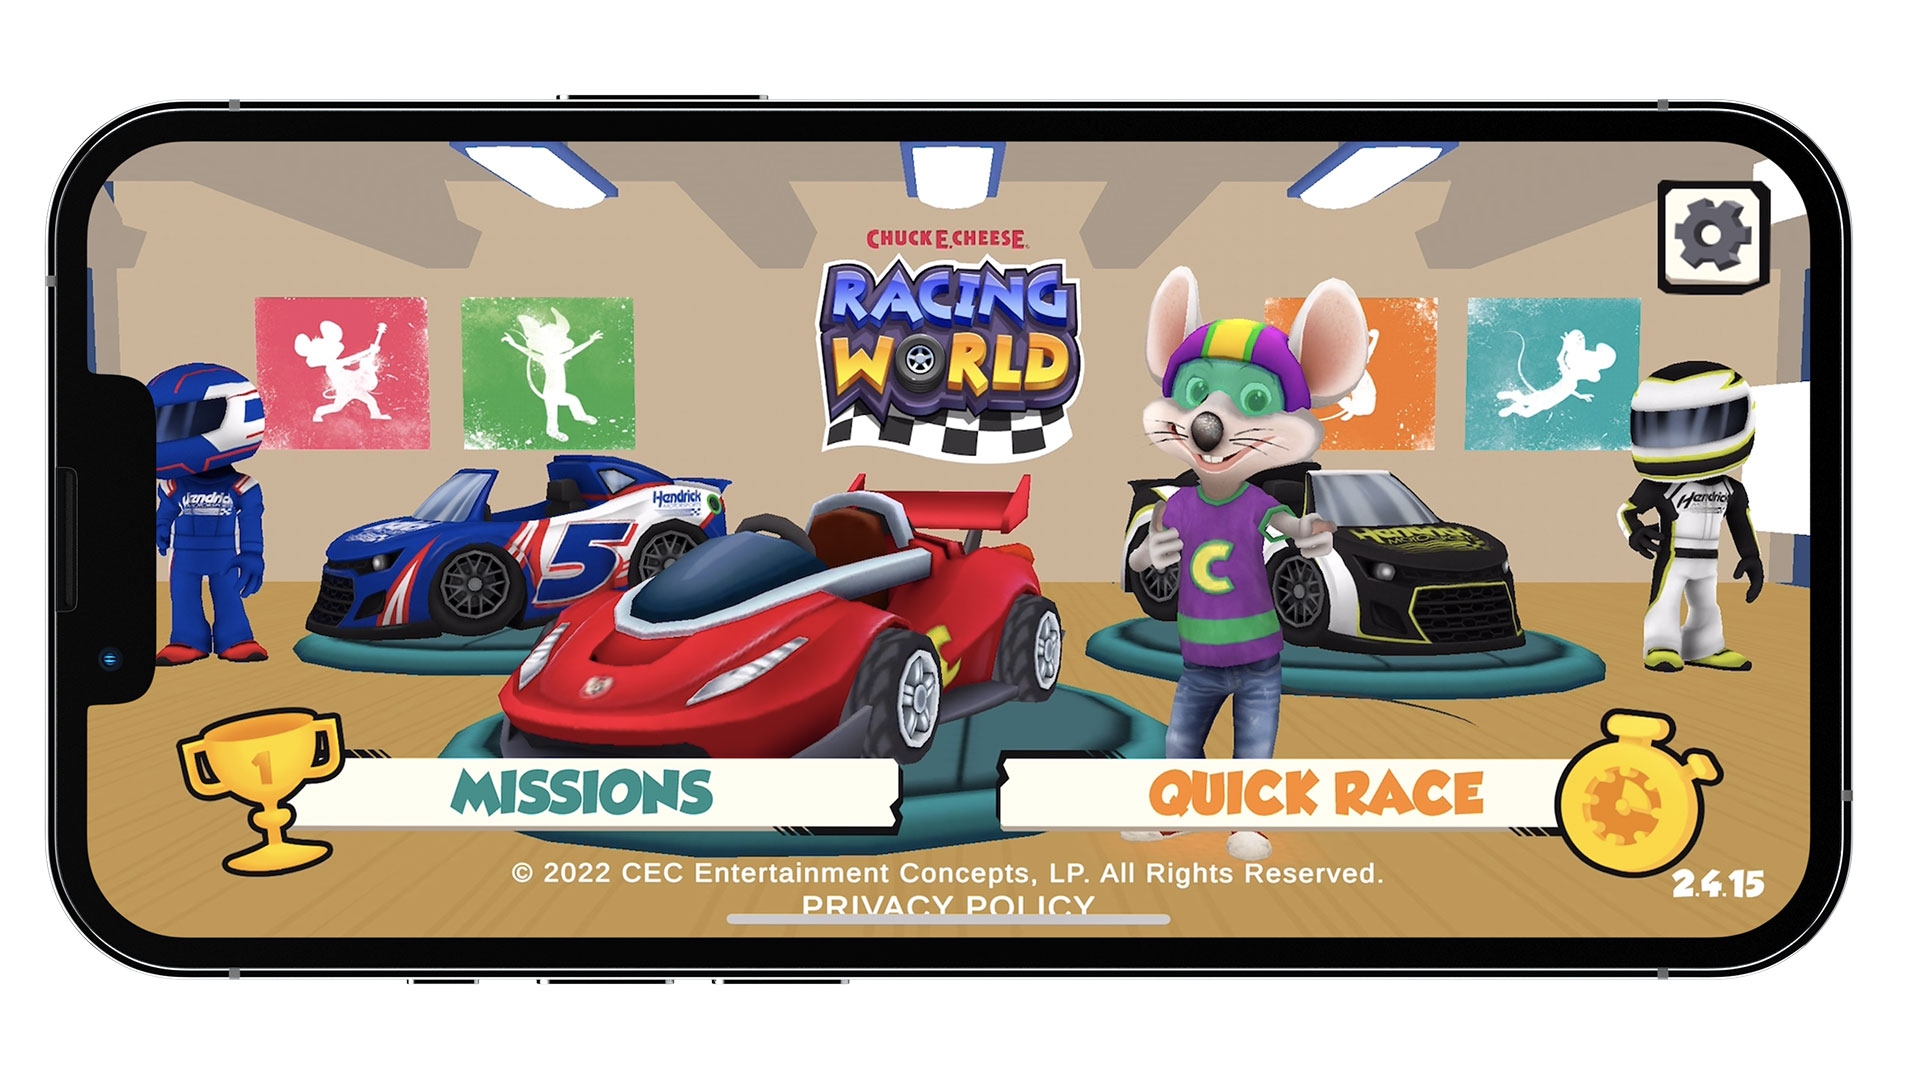 Chuck E. Cheese Racing World Game App